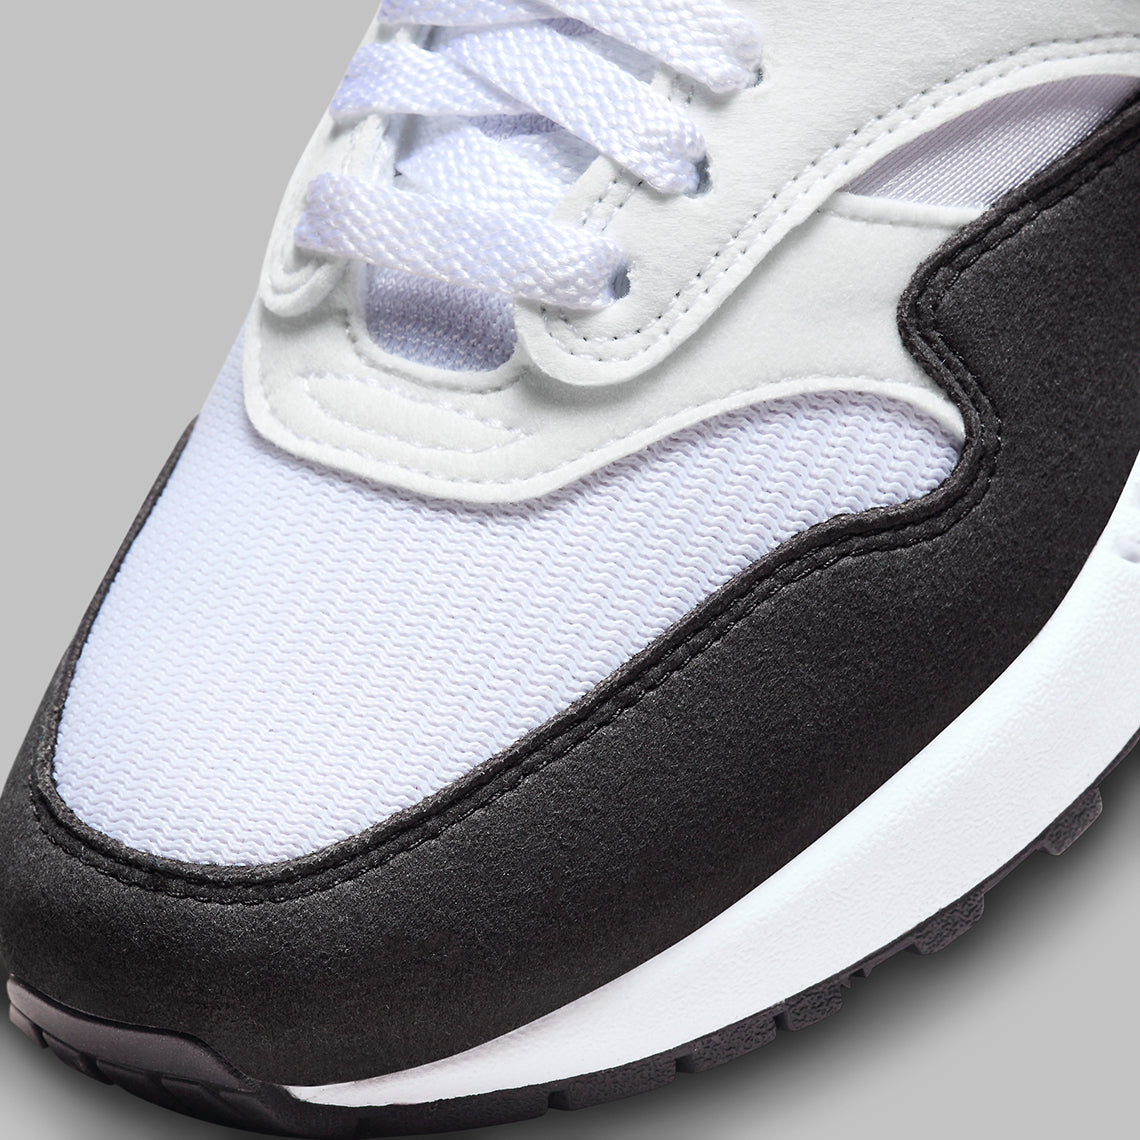 Nike Air Max 1 White Black Neutral Grey